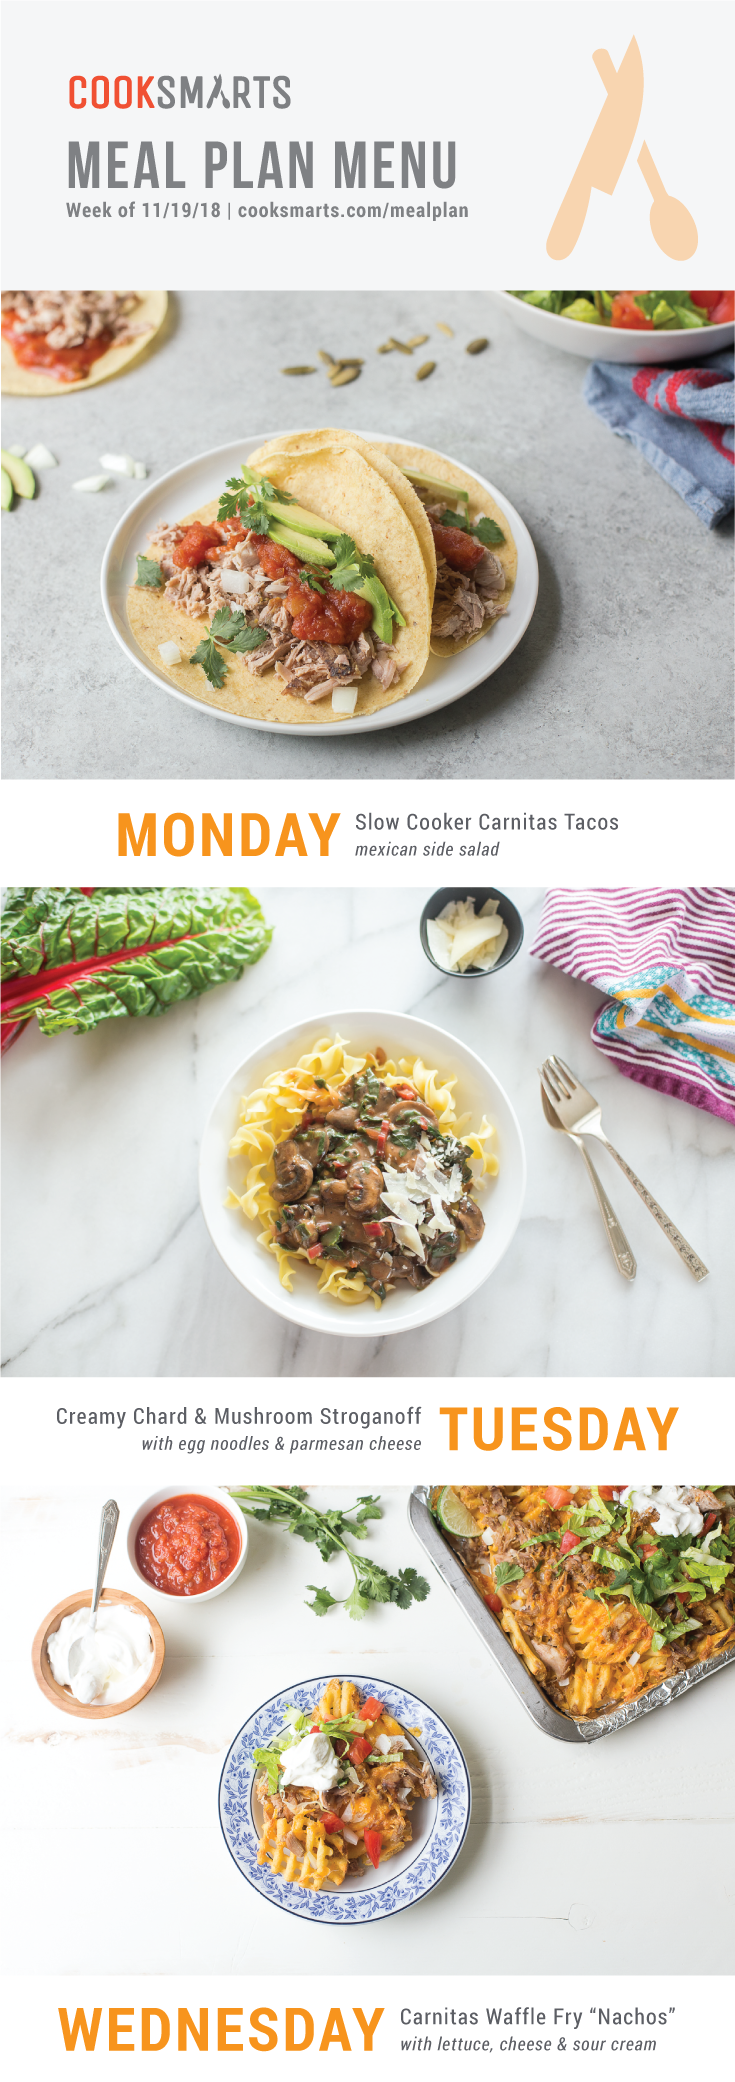 Weekly Meal Planner | Menu for Week of 11/19/18 via Cook Smarts